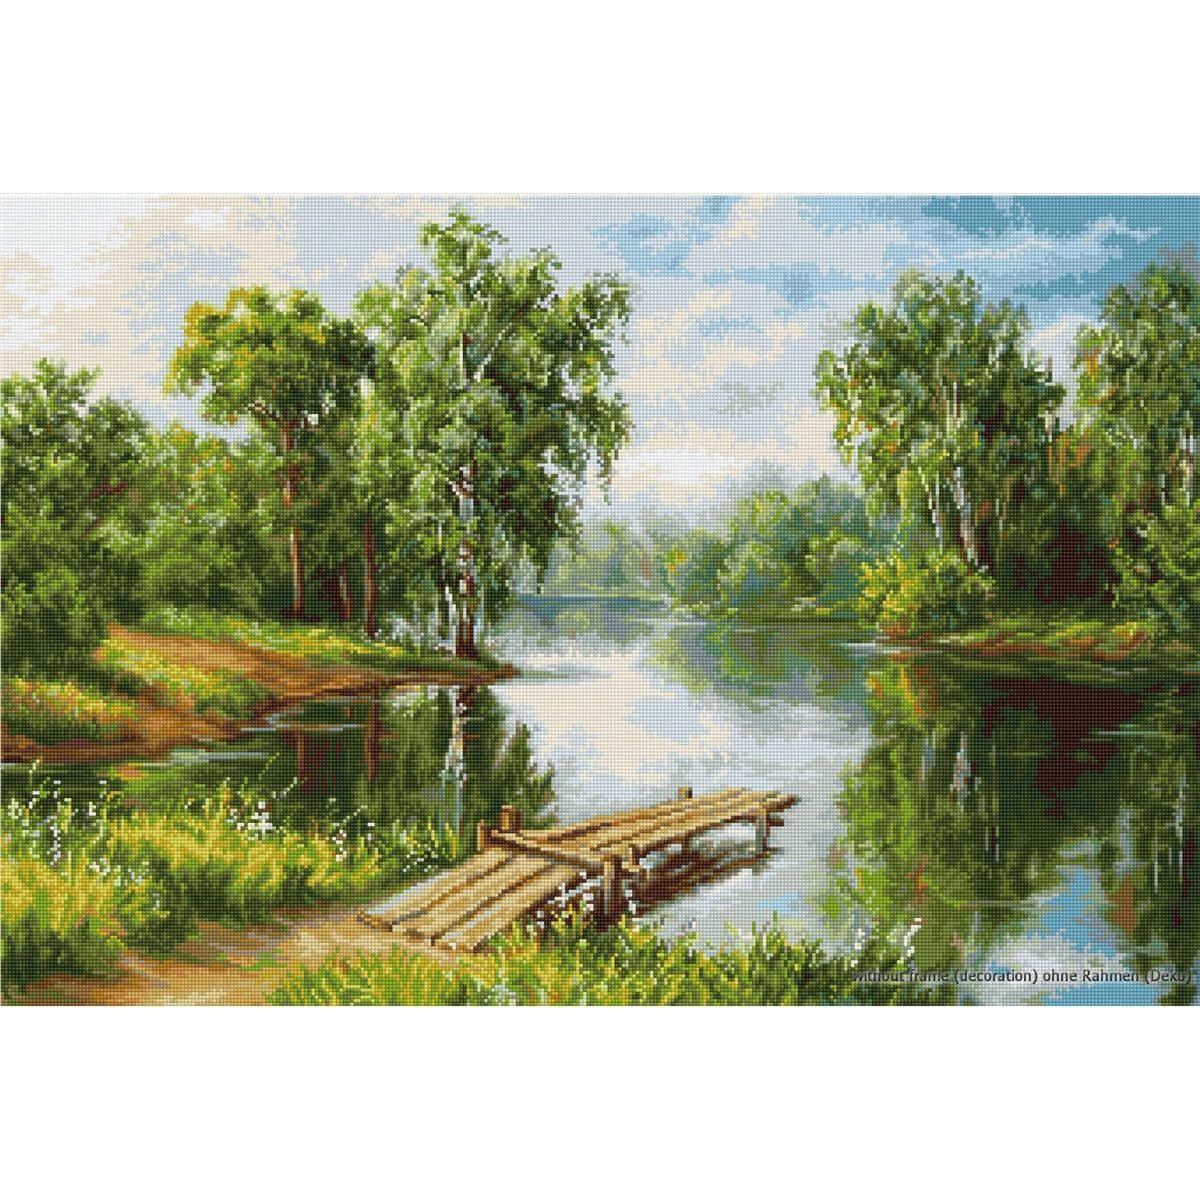 Спокойная сцена на берегу озера с деревянным причалом,...